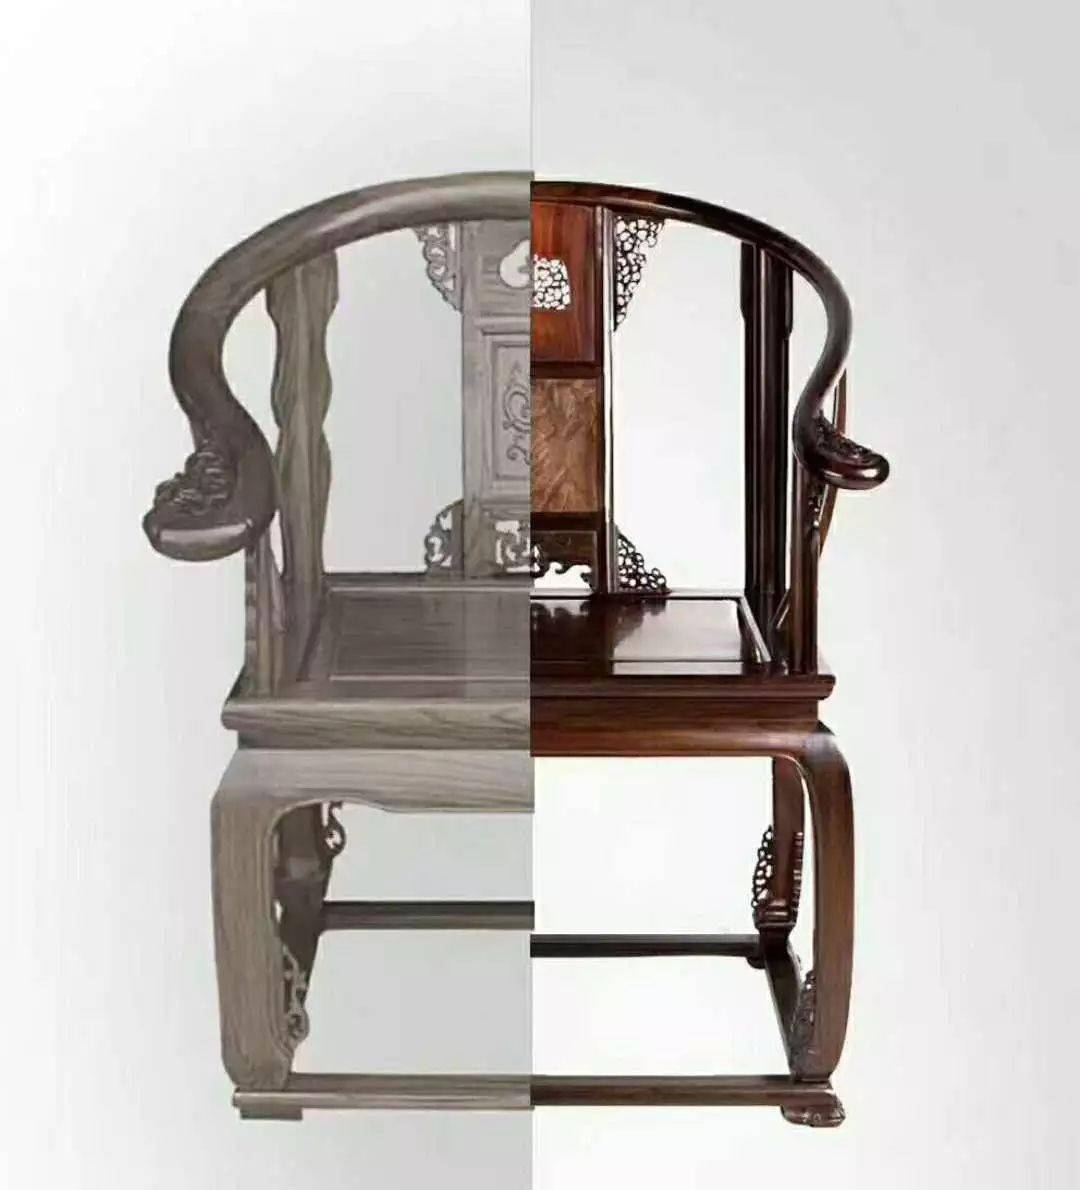 这把椅子的原型在故宫博物馆!